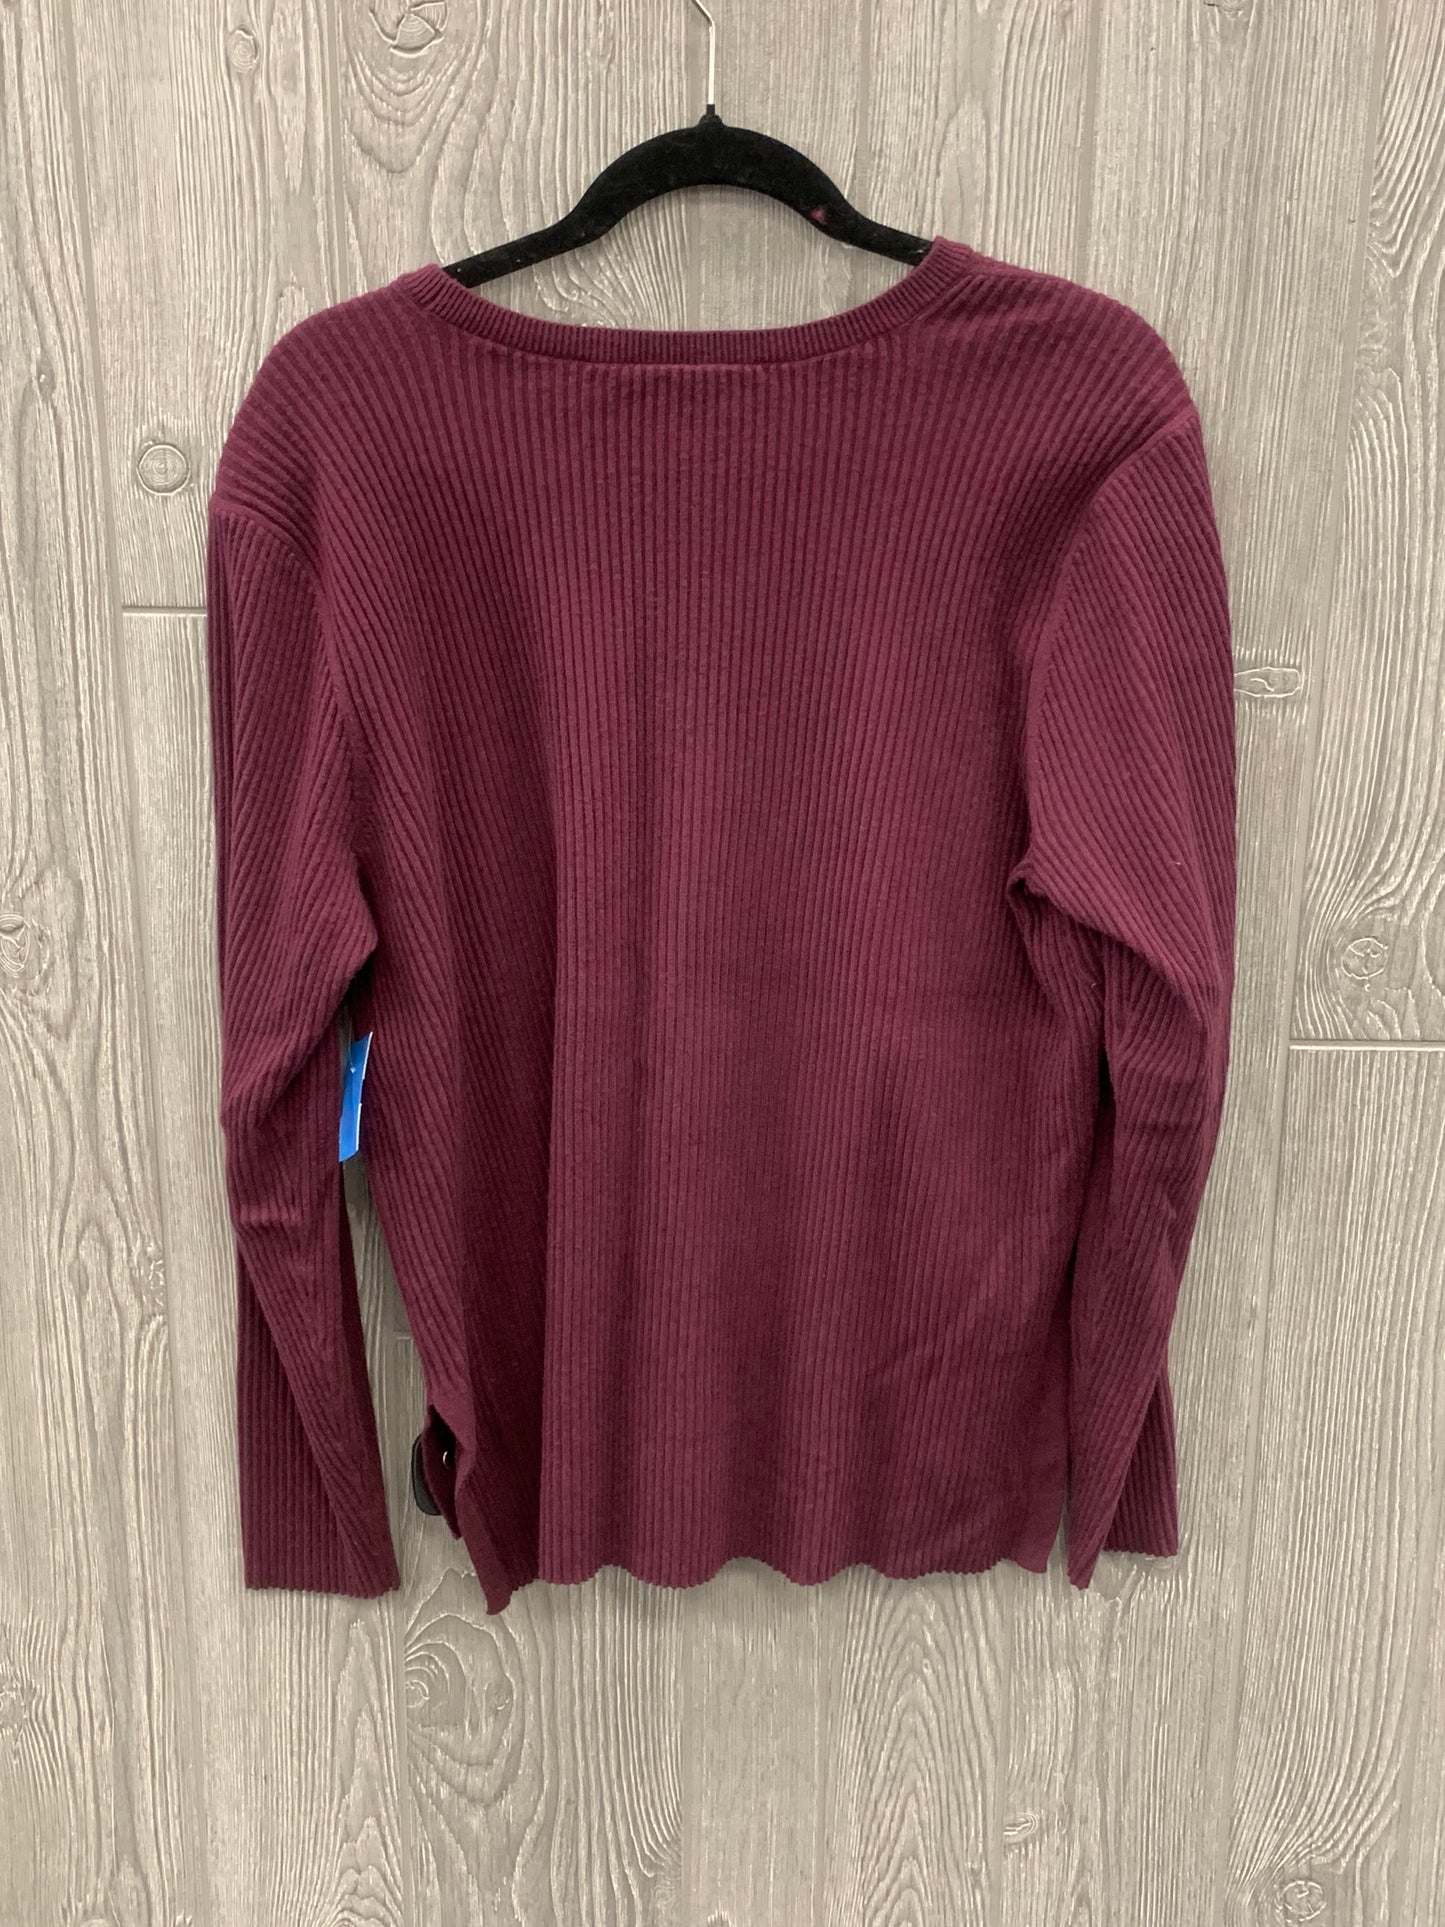 Sweater By Loft  Size: Xxl